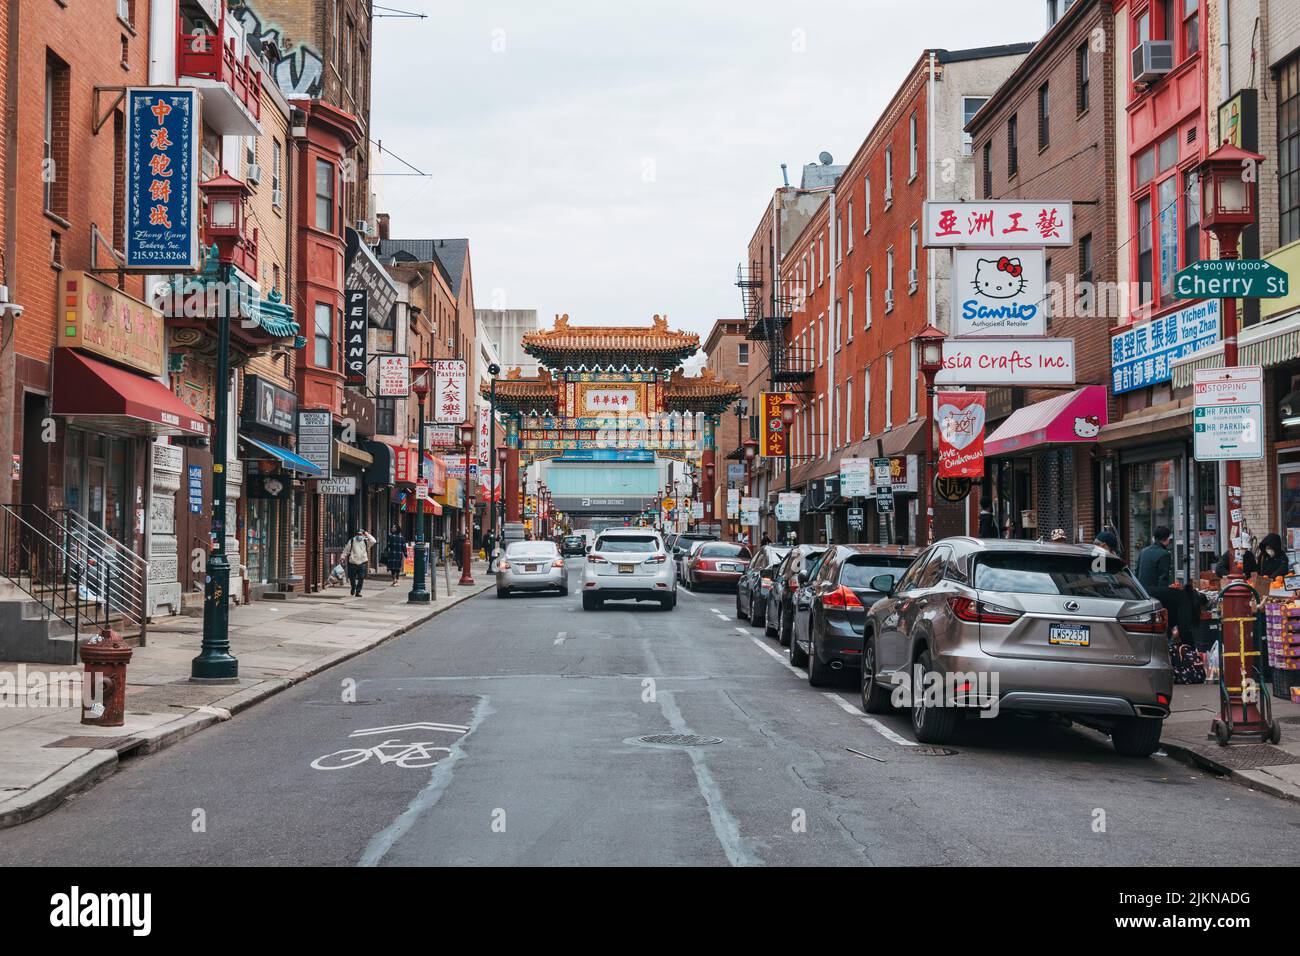 Mirando hacia abajo una calle llena de restaurantes, tiendas y otros negocios chinos en Chinatown, Filadelfia, Estados Unidos Foto de stock